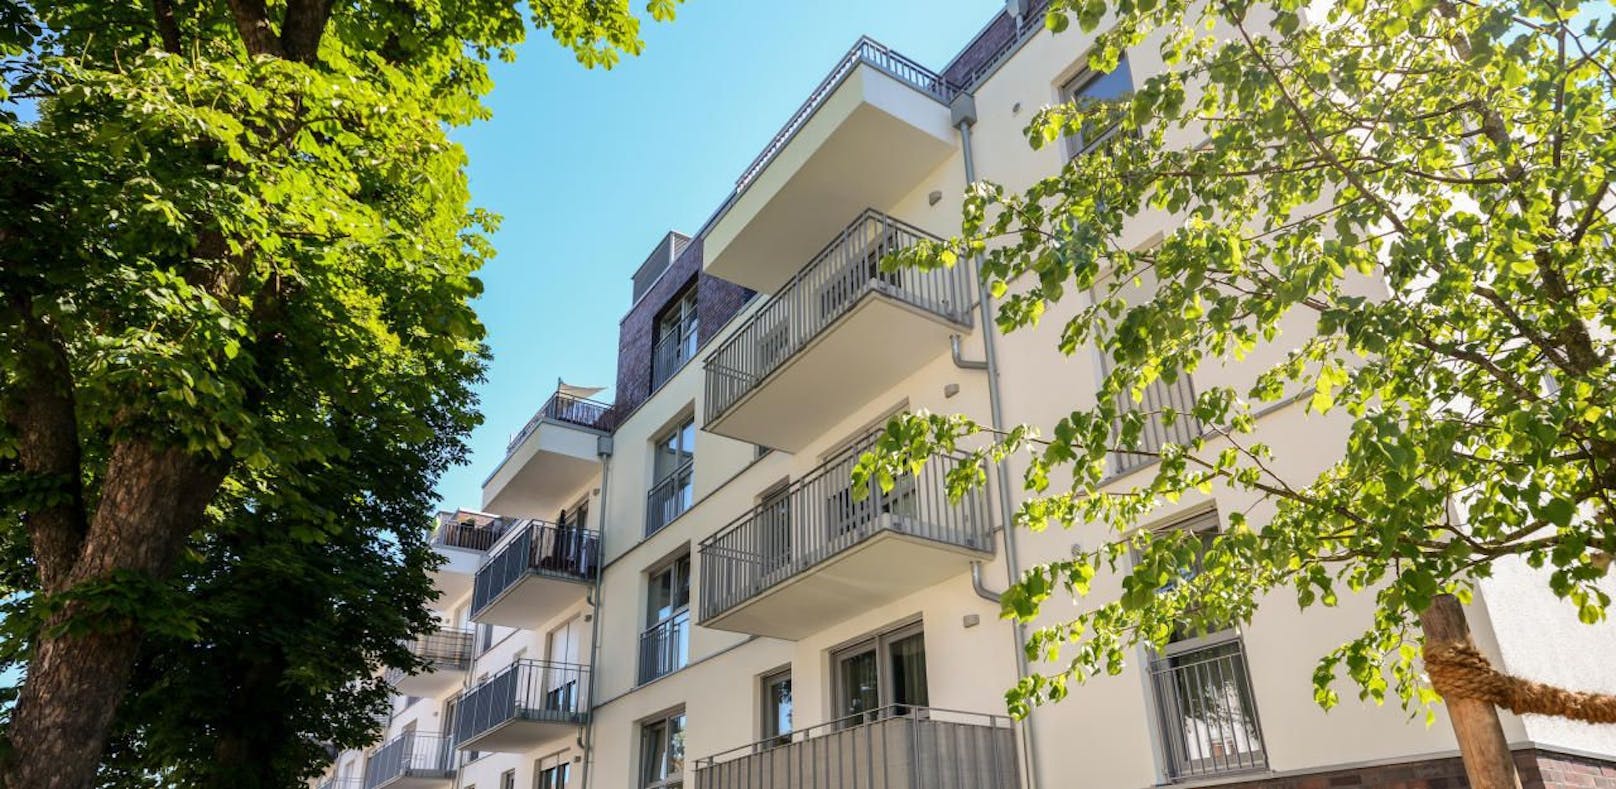 41 Prozent der Österreicher wünschen sich einen Balkon oder eine Terrasse für ihre Wohnung.